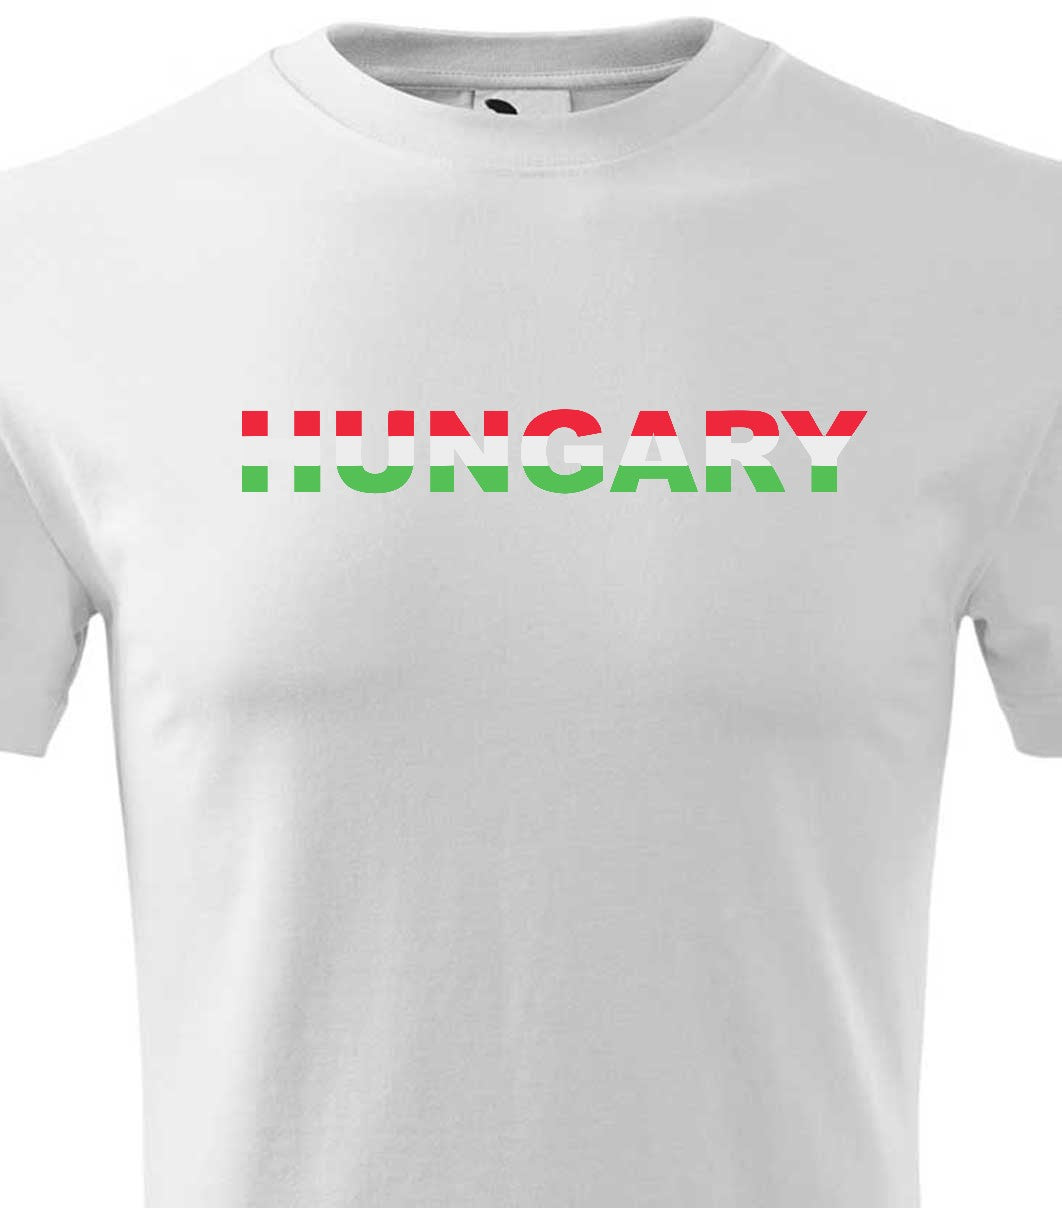 Magyarország 2 férfi póló